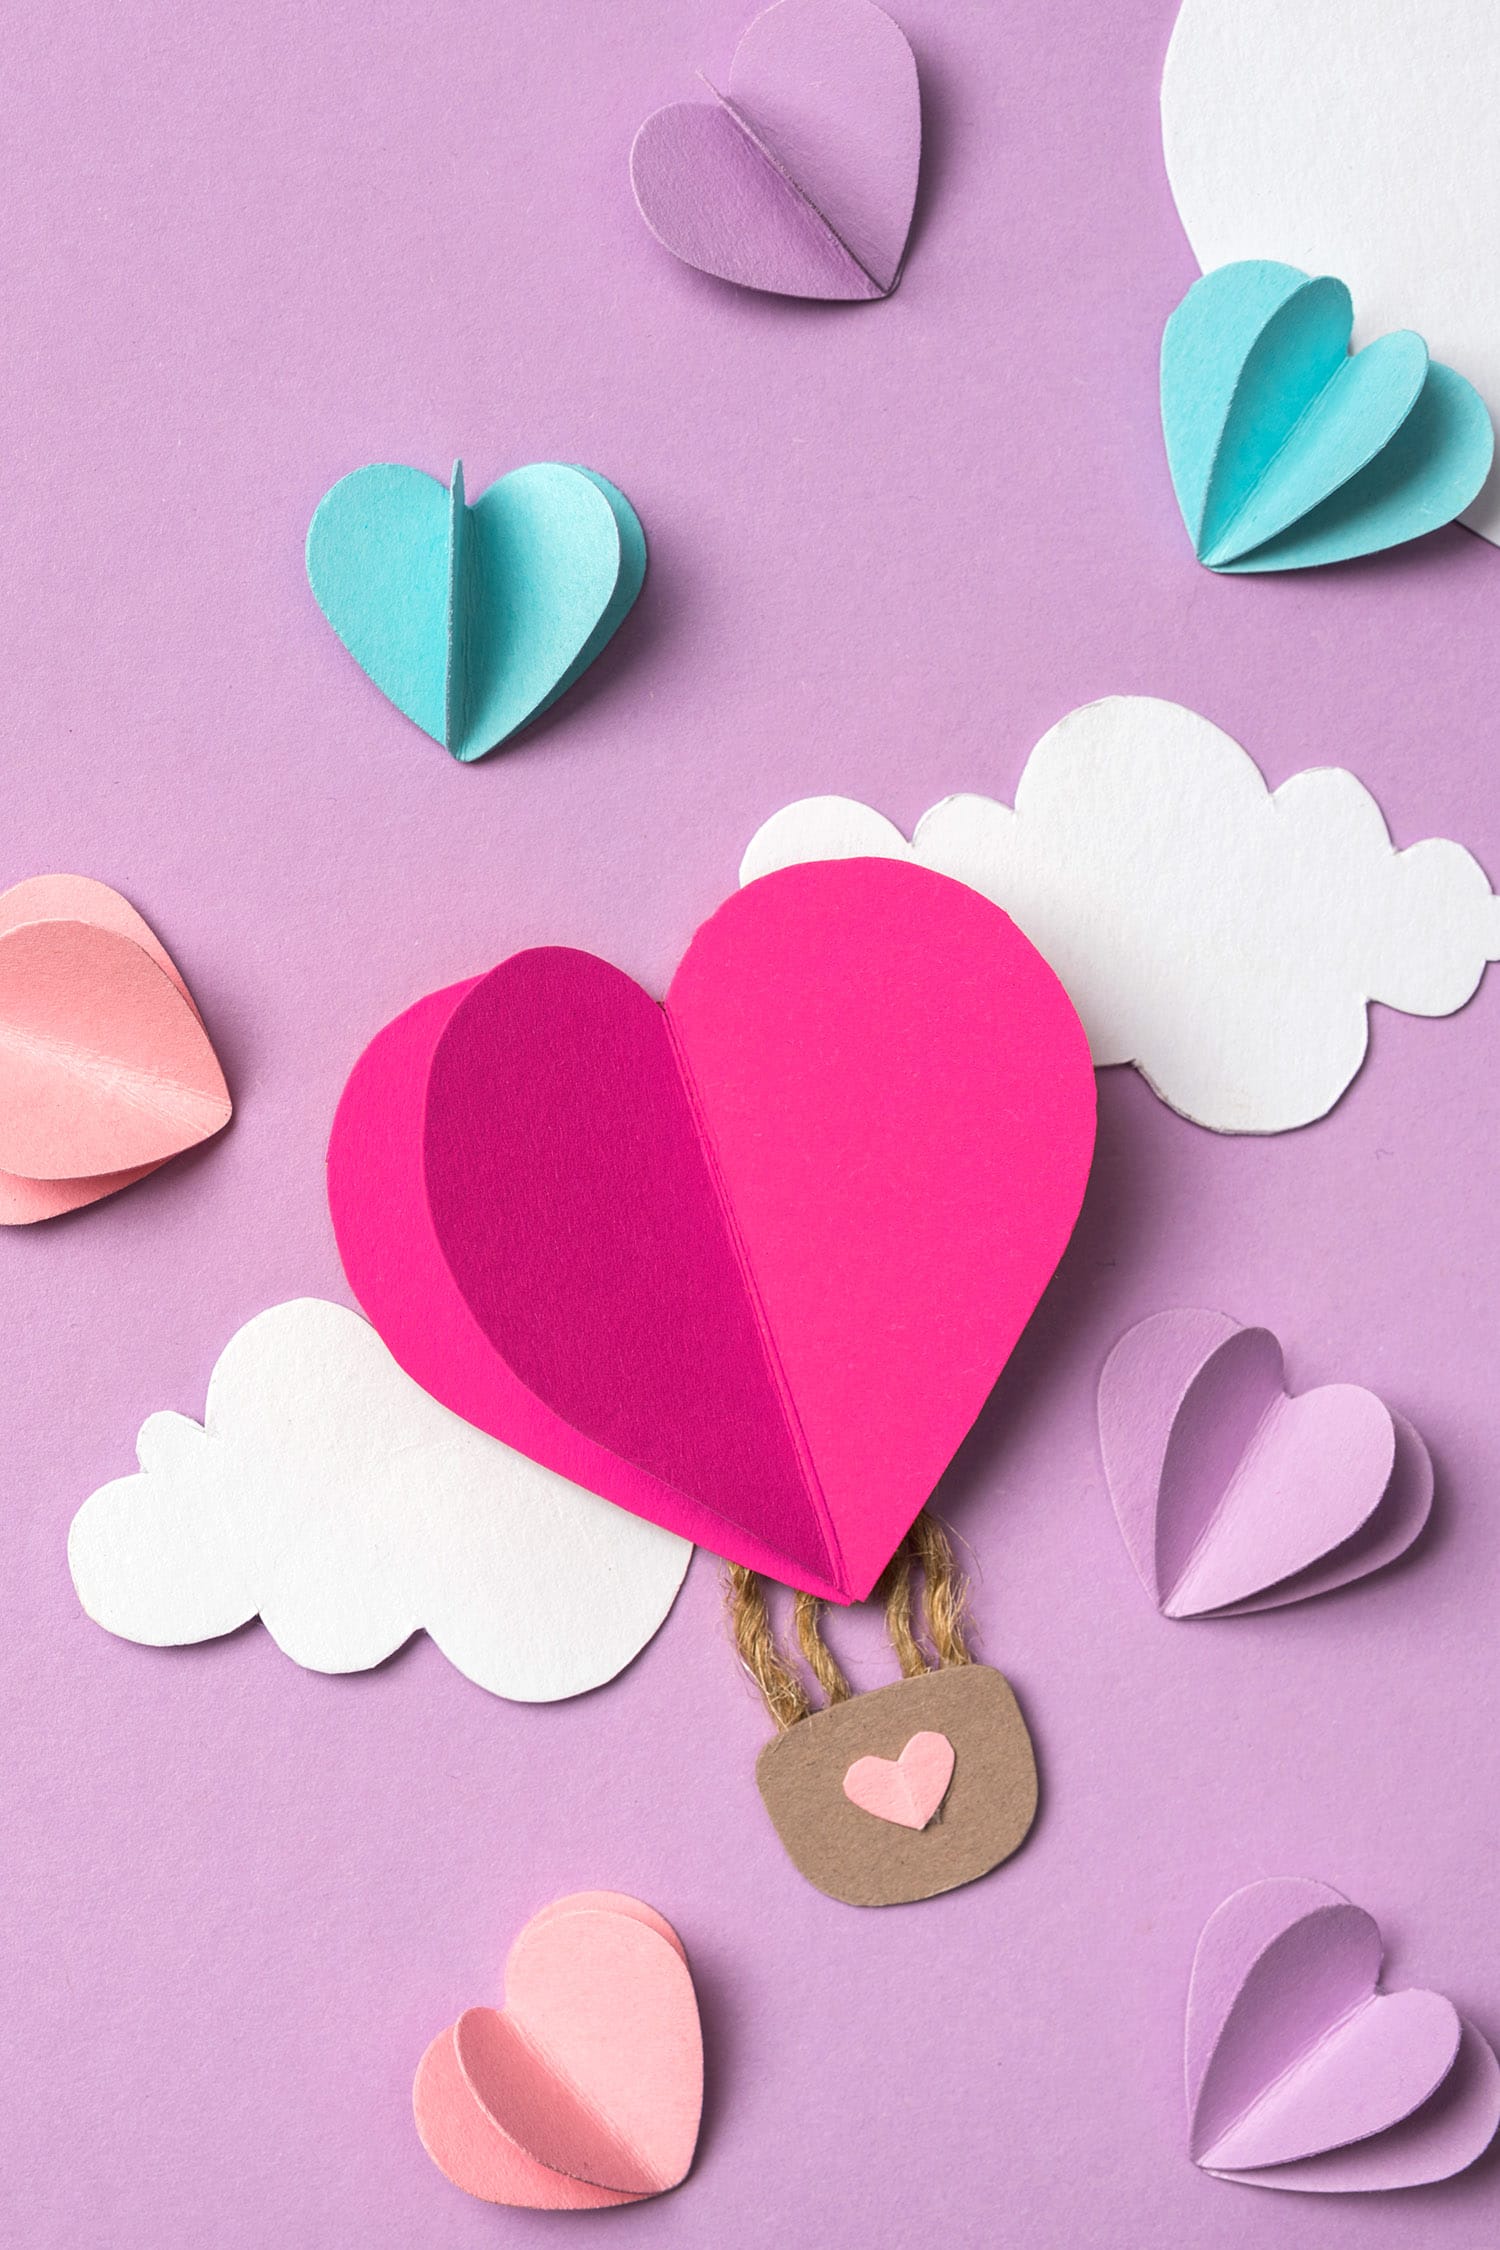 How to craft valentine hearts stencils 